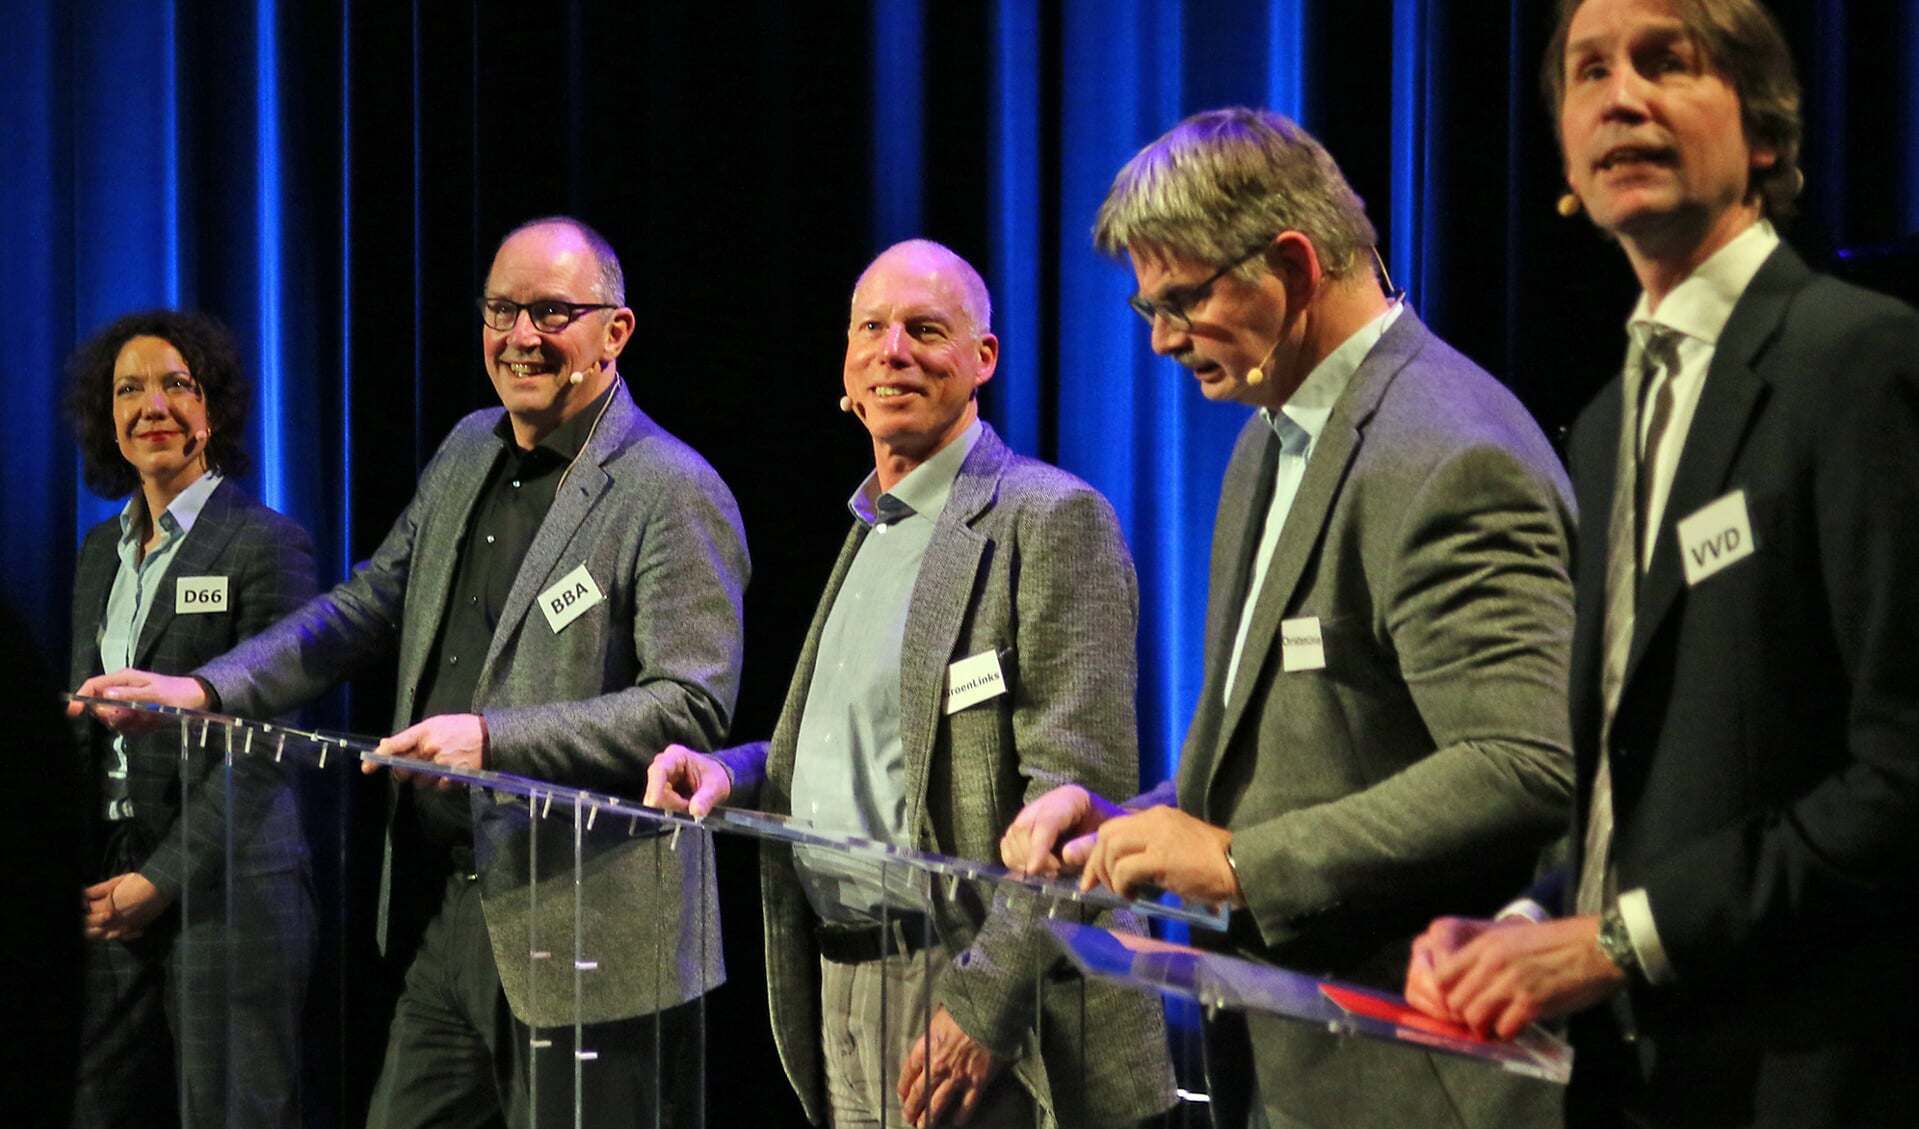 Vlnr: Maaike Veeningen (D66), Peter Bot (BBA), Martin Kortekaas (GrL), Bert de Pijper (CU) en Herbert Raat (VVD).